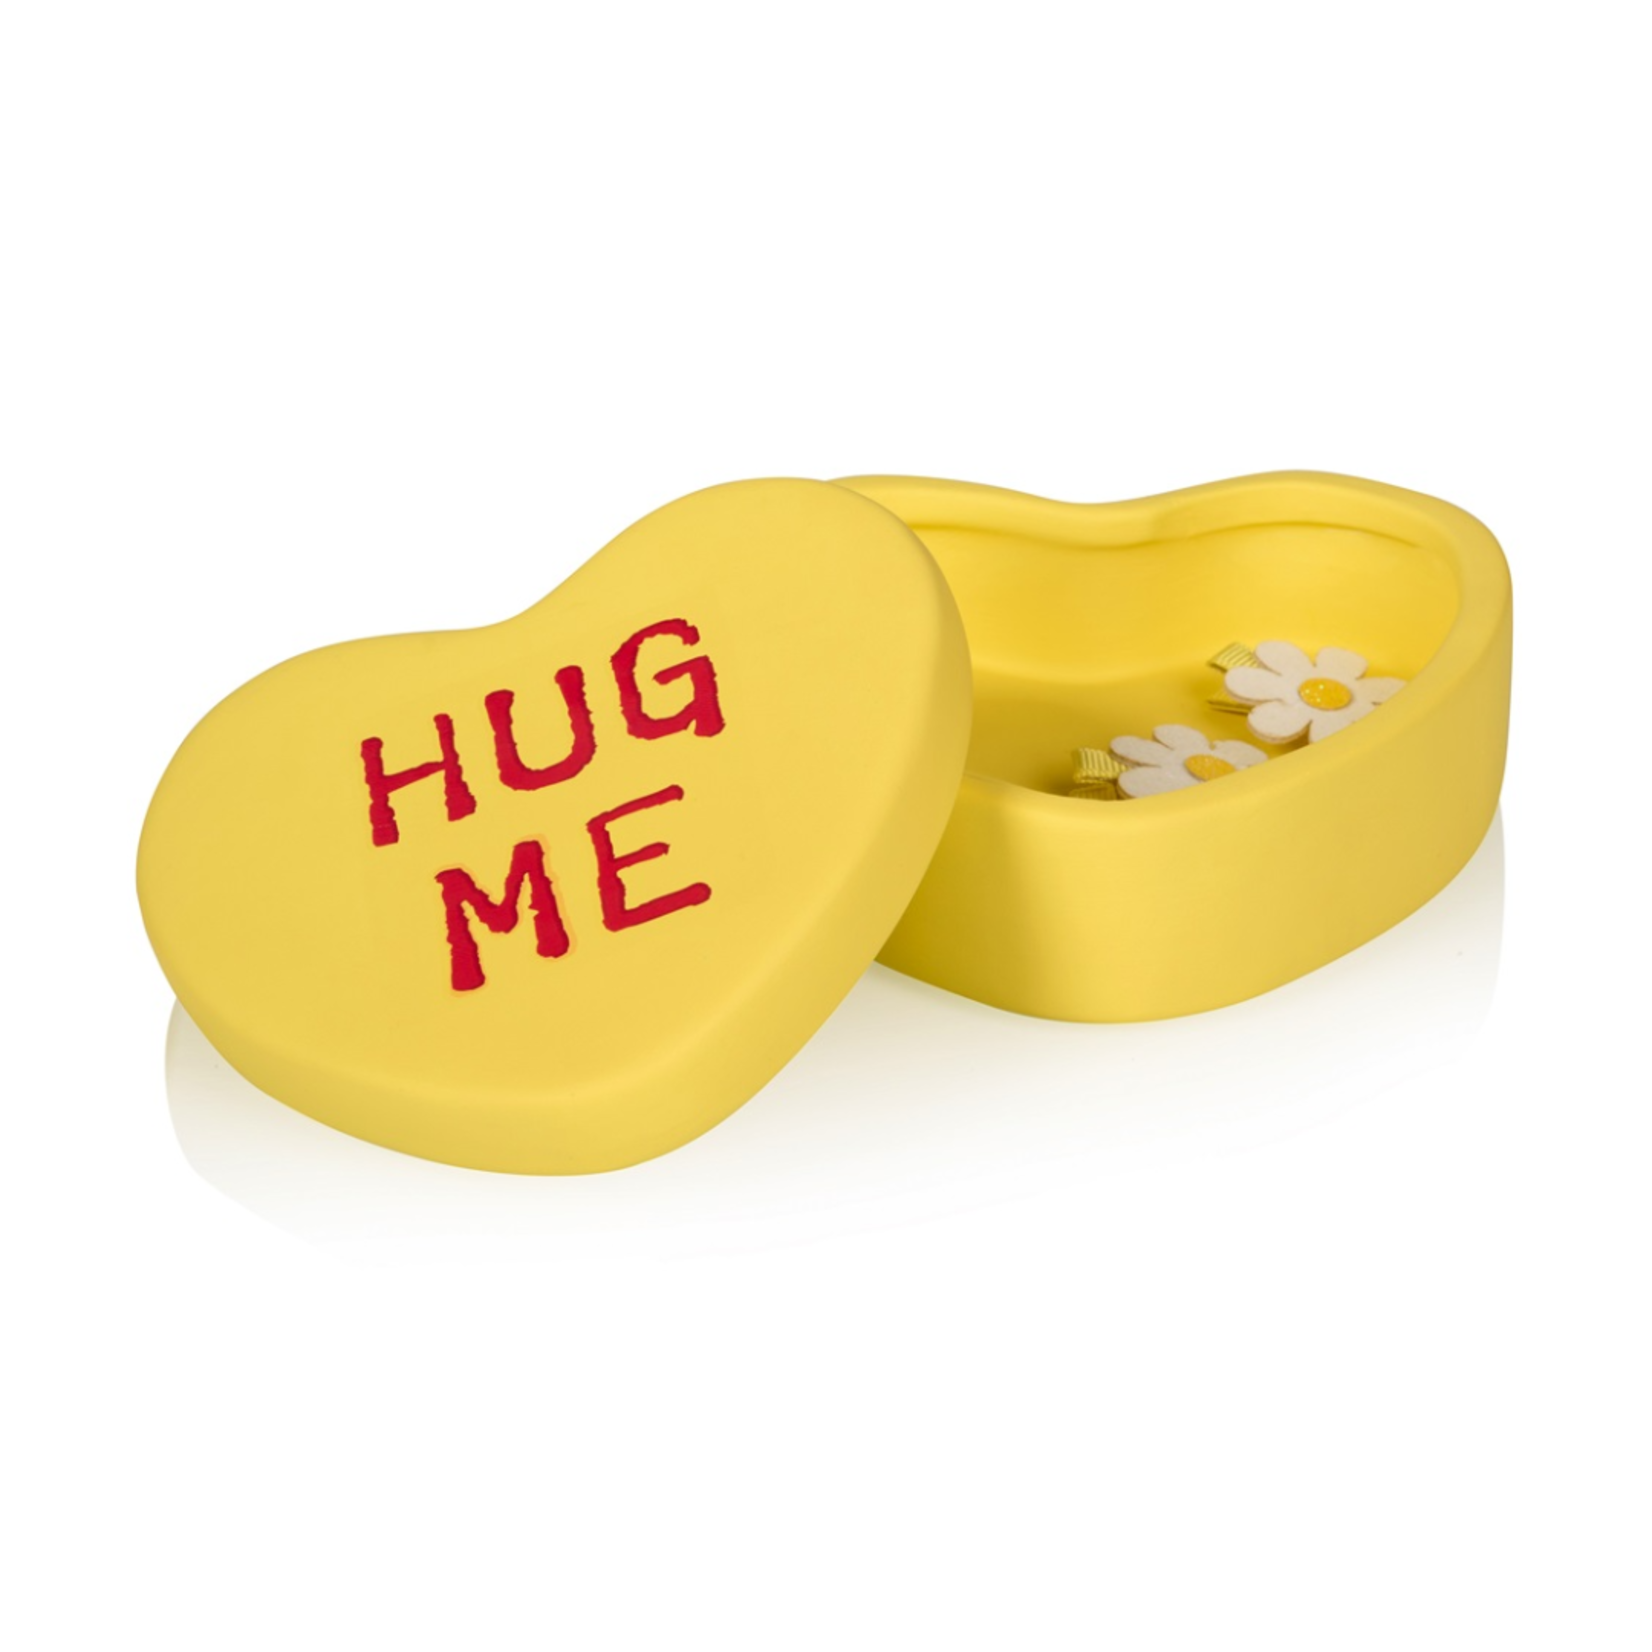 Bitten-Design Sweet Heart Candy Box Hug Me